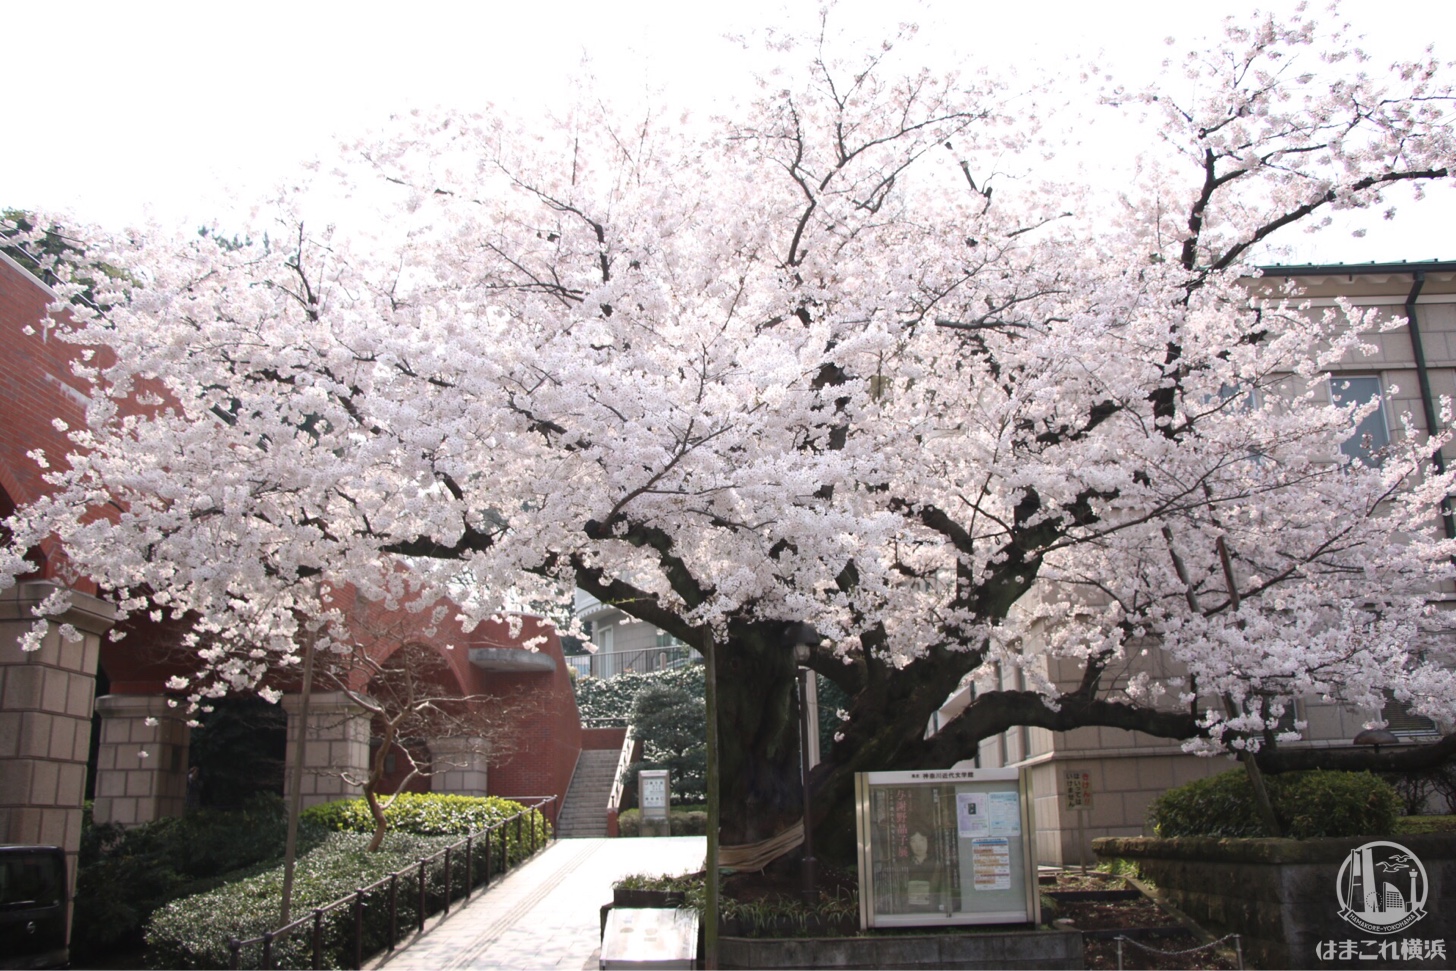 港の見える丘公園 桜